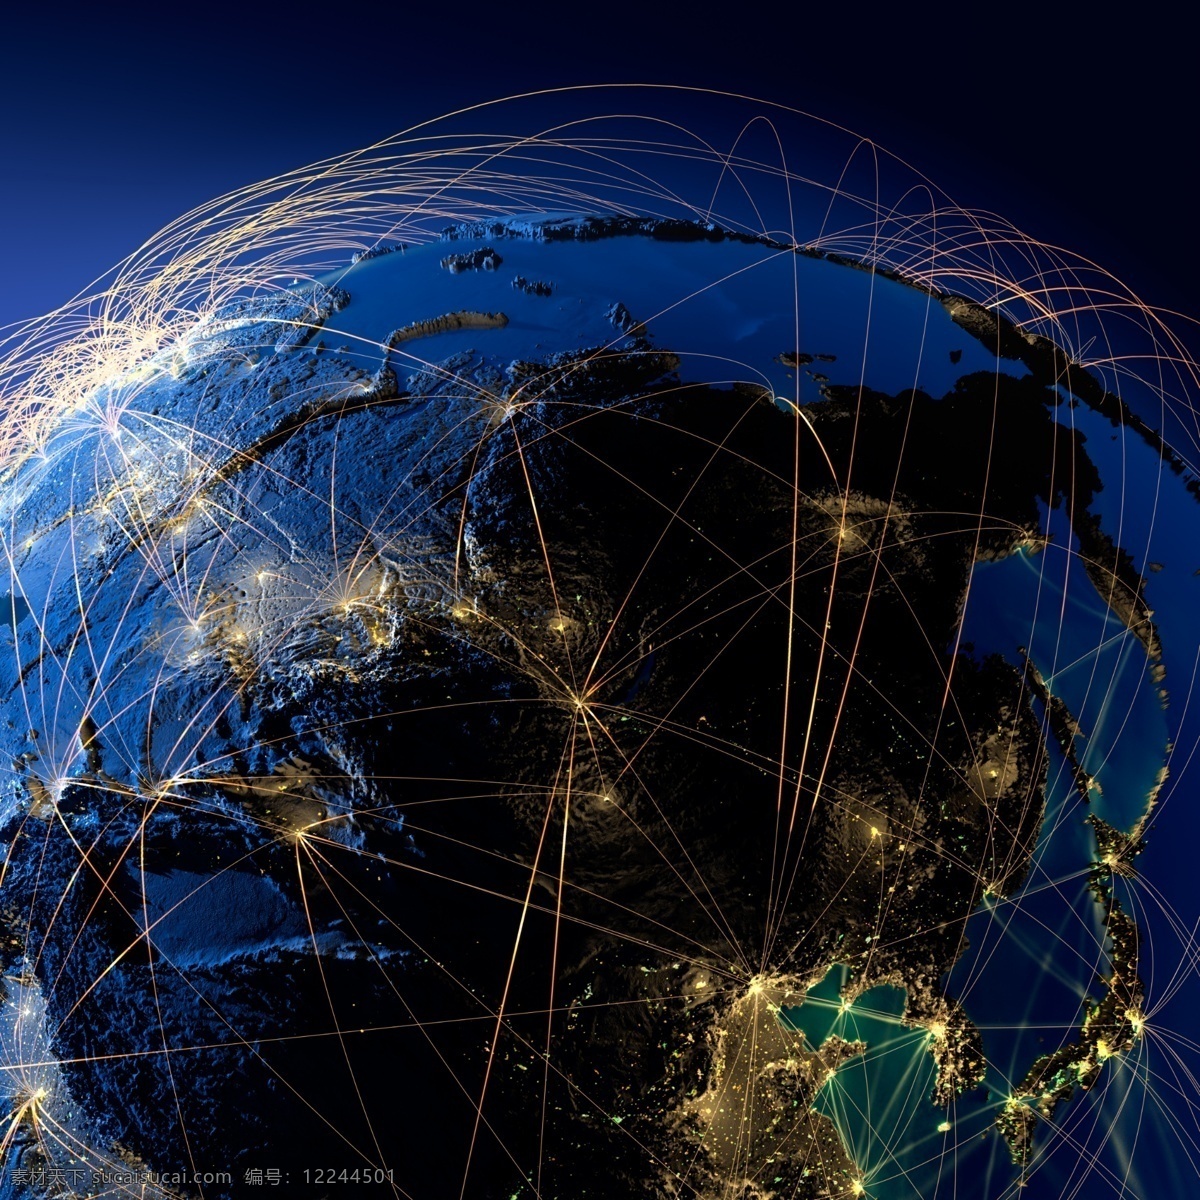 亚欧 板块 辐射 图 亚欧板块 地球 辐射全球 网络通讯 分布图 蓝色地球 地球背景 世界地图 鸟瞰地球 地球表面 其他类别 环境家居